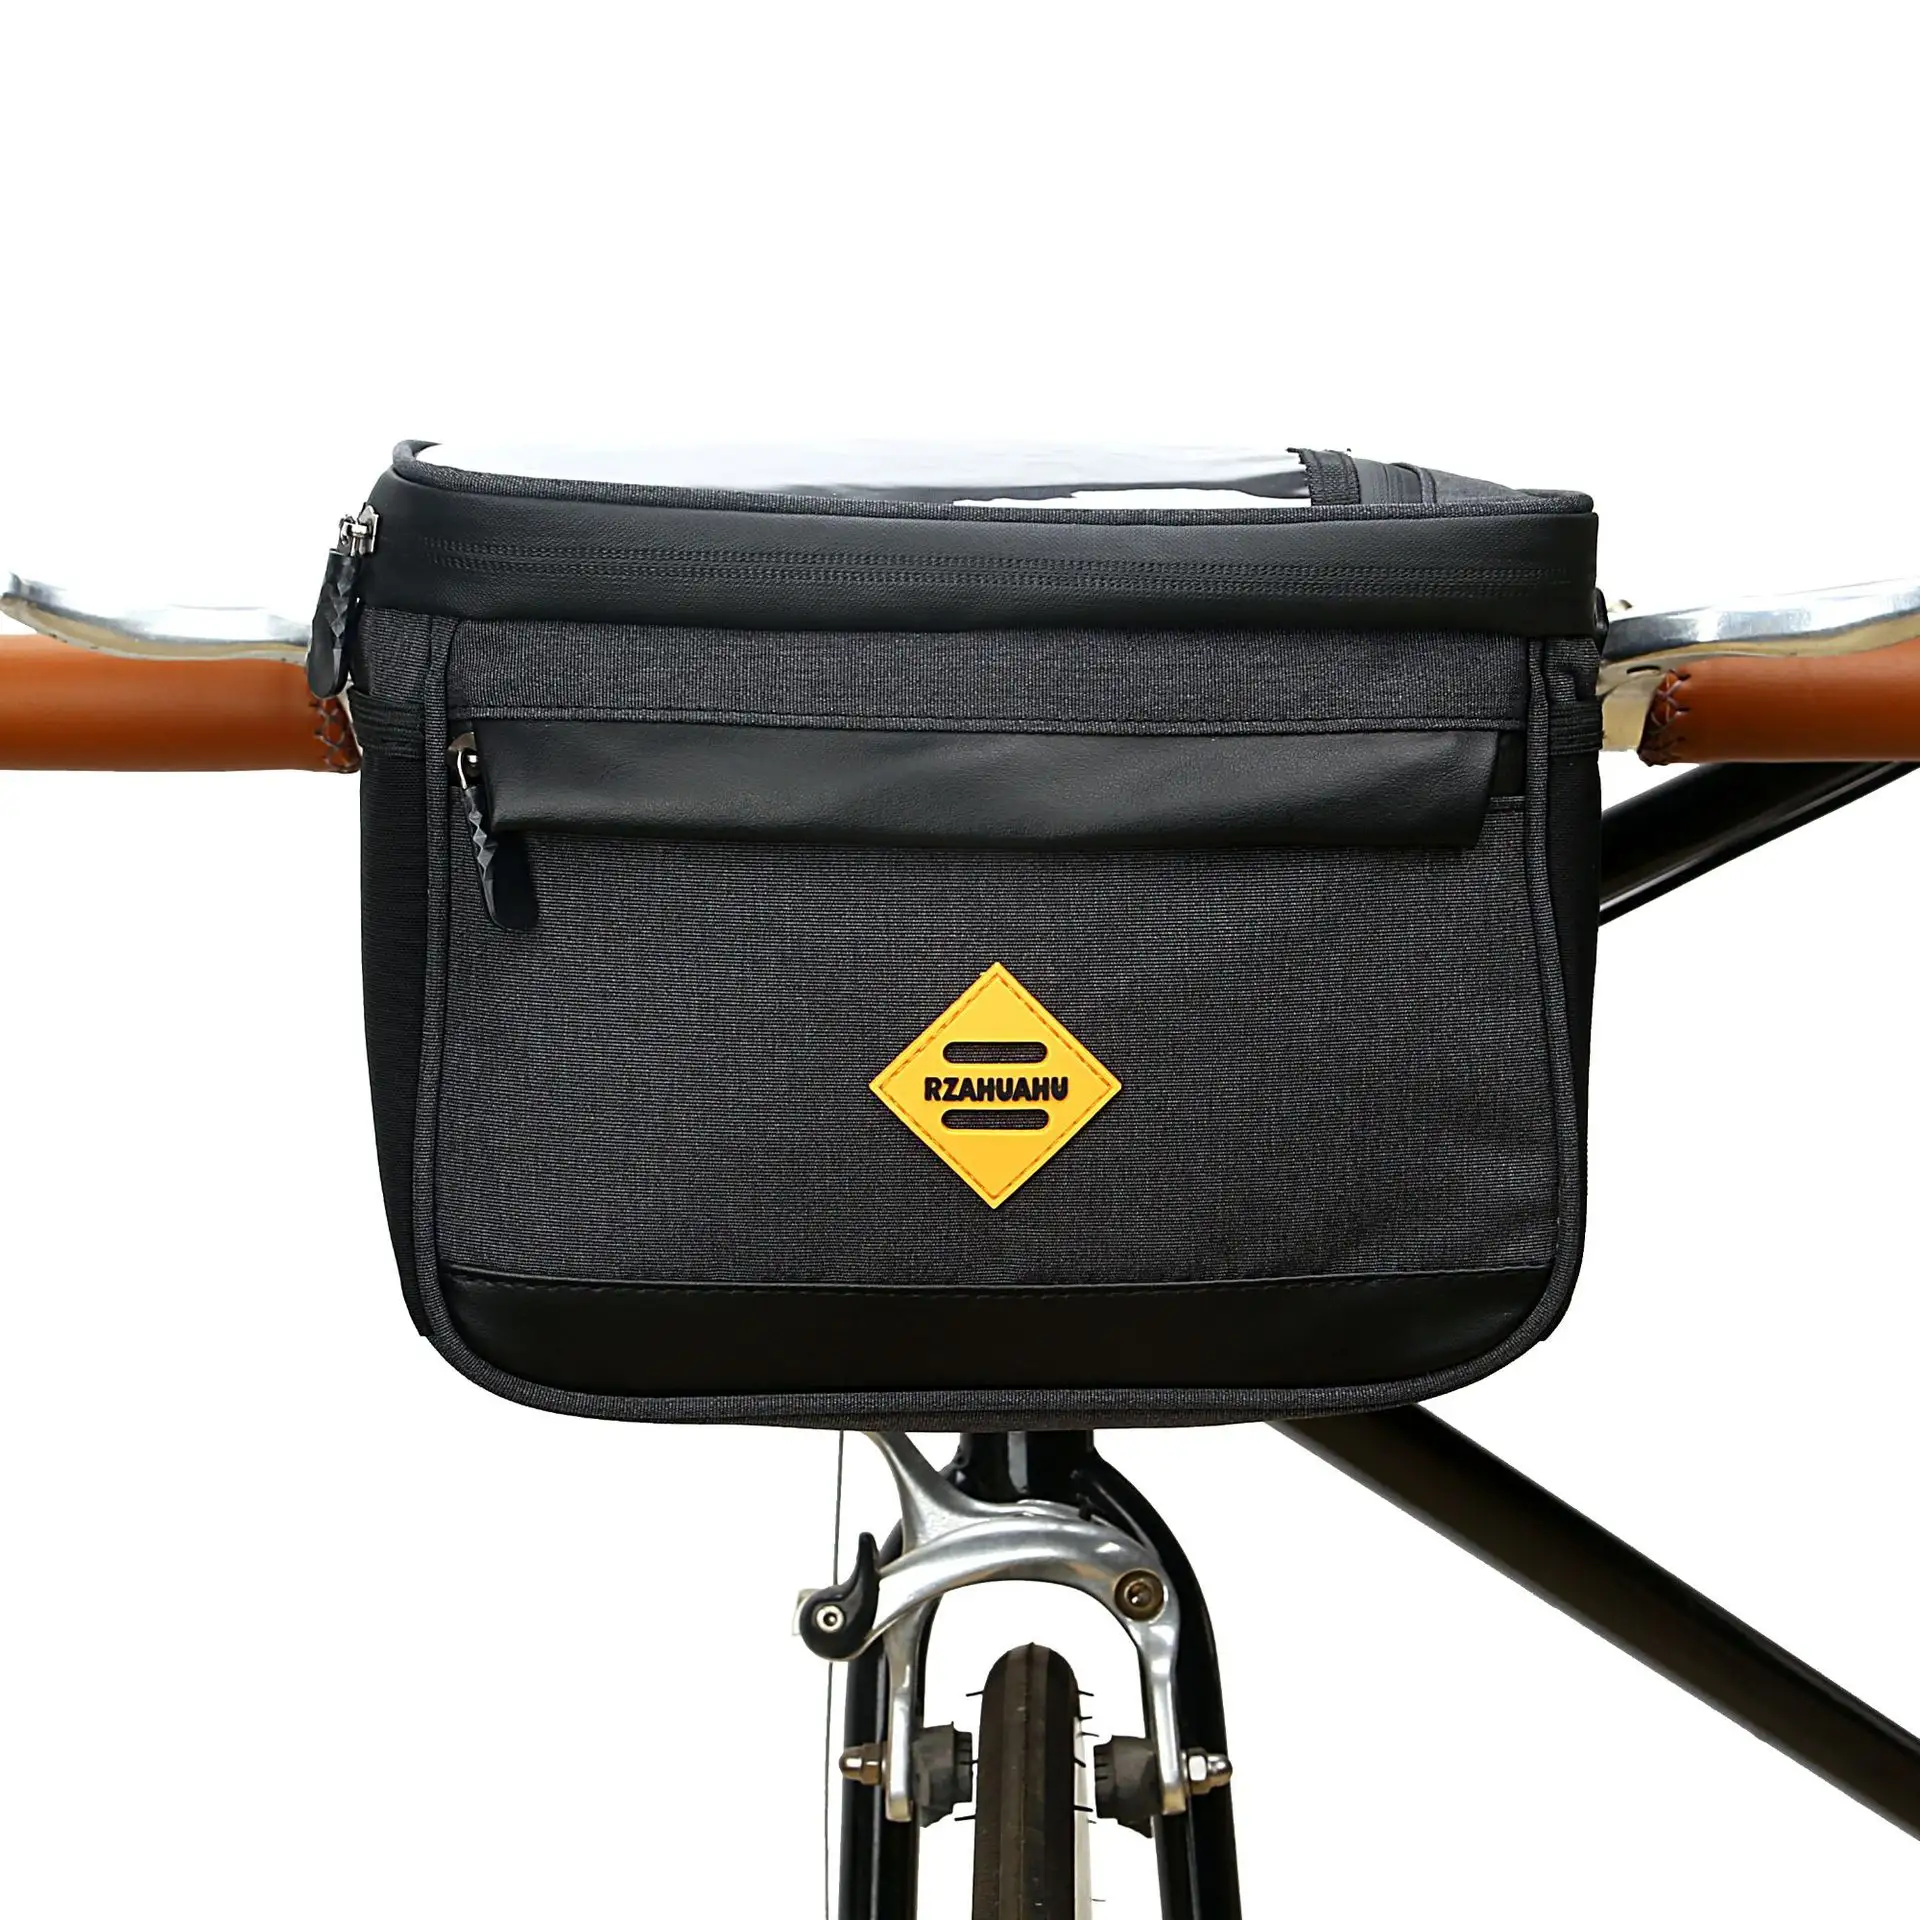 Оригинальная сумка на велосипедную раму OEM, сумки на руль, передняя сумка, водонепроницаемая велосипедная сумка для горного велосипеда, велосипедная многофункциональная сумка с ручками